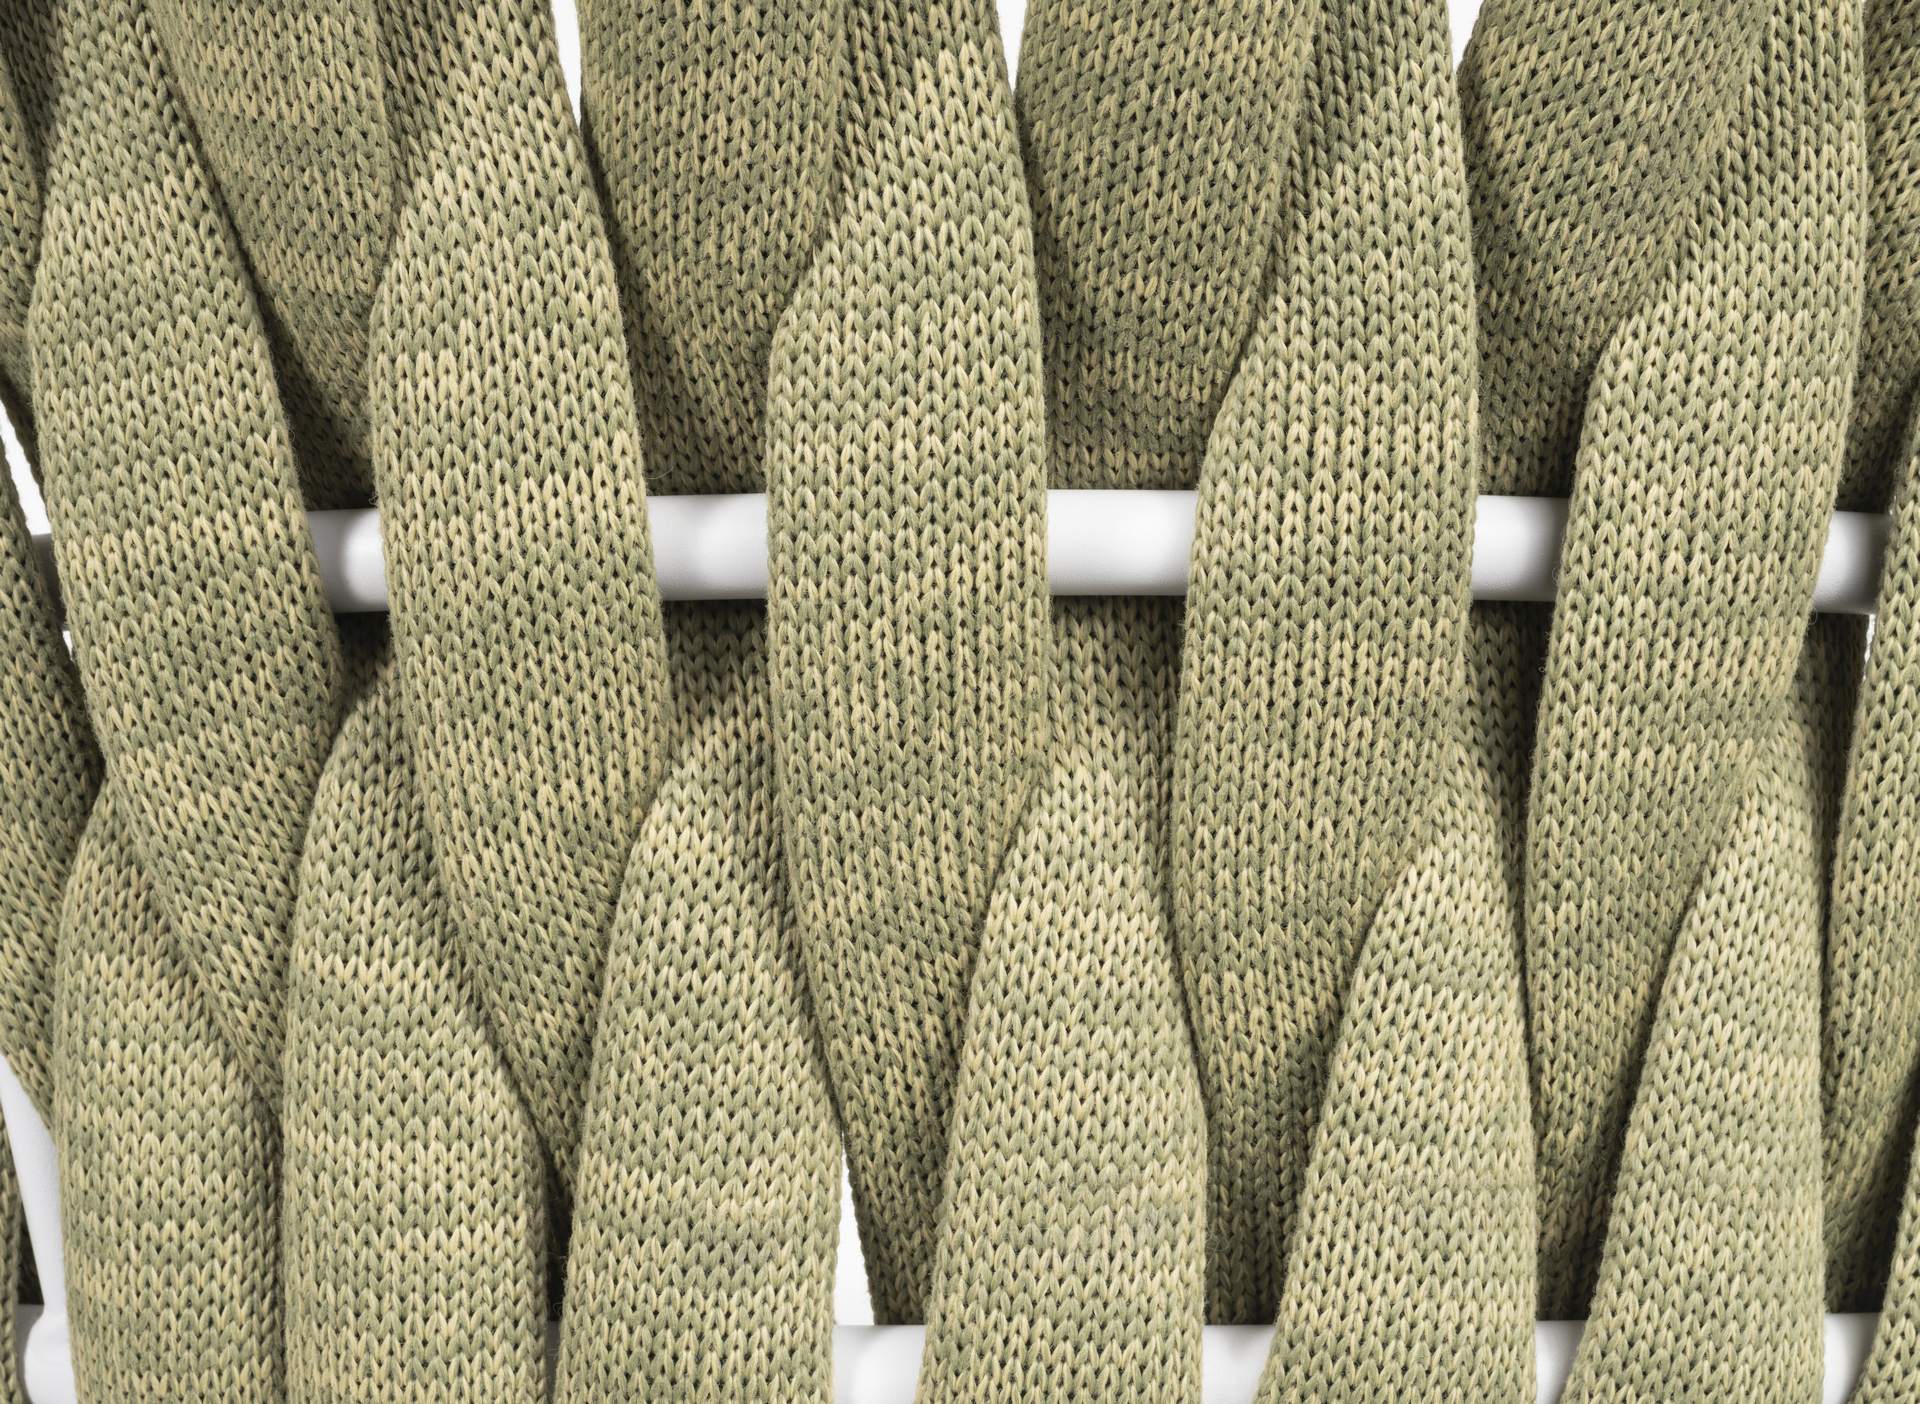 Moderner 'Buzz' Armstuhl mit wasserresistenten grünen Textilschnüren und weißem Metallgestell, kombiniert mit beigem Komfortkissen, erhältlich bei Gartenmoebelshop.at - Detailansicht Schnüre